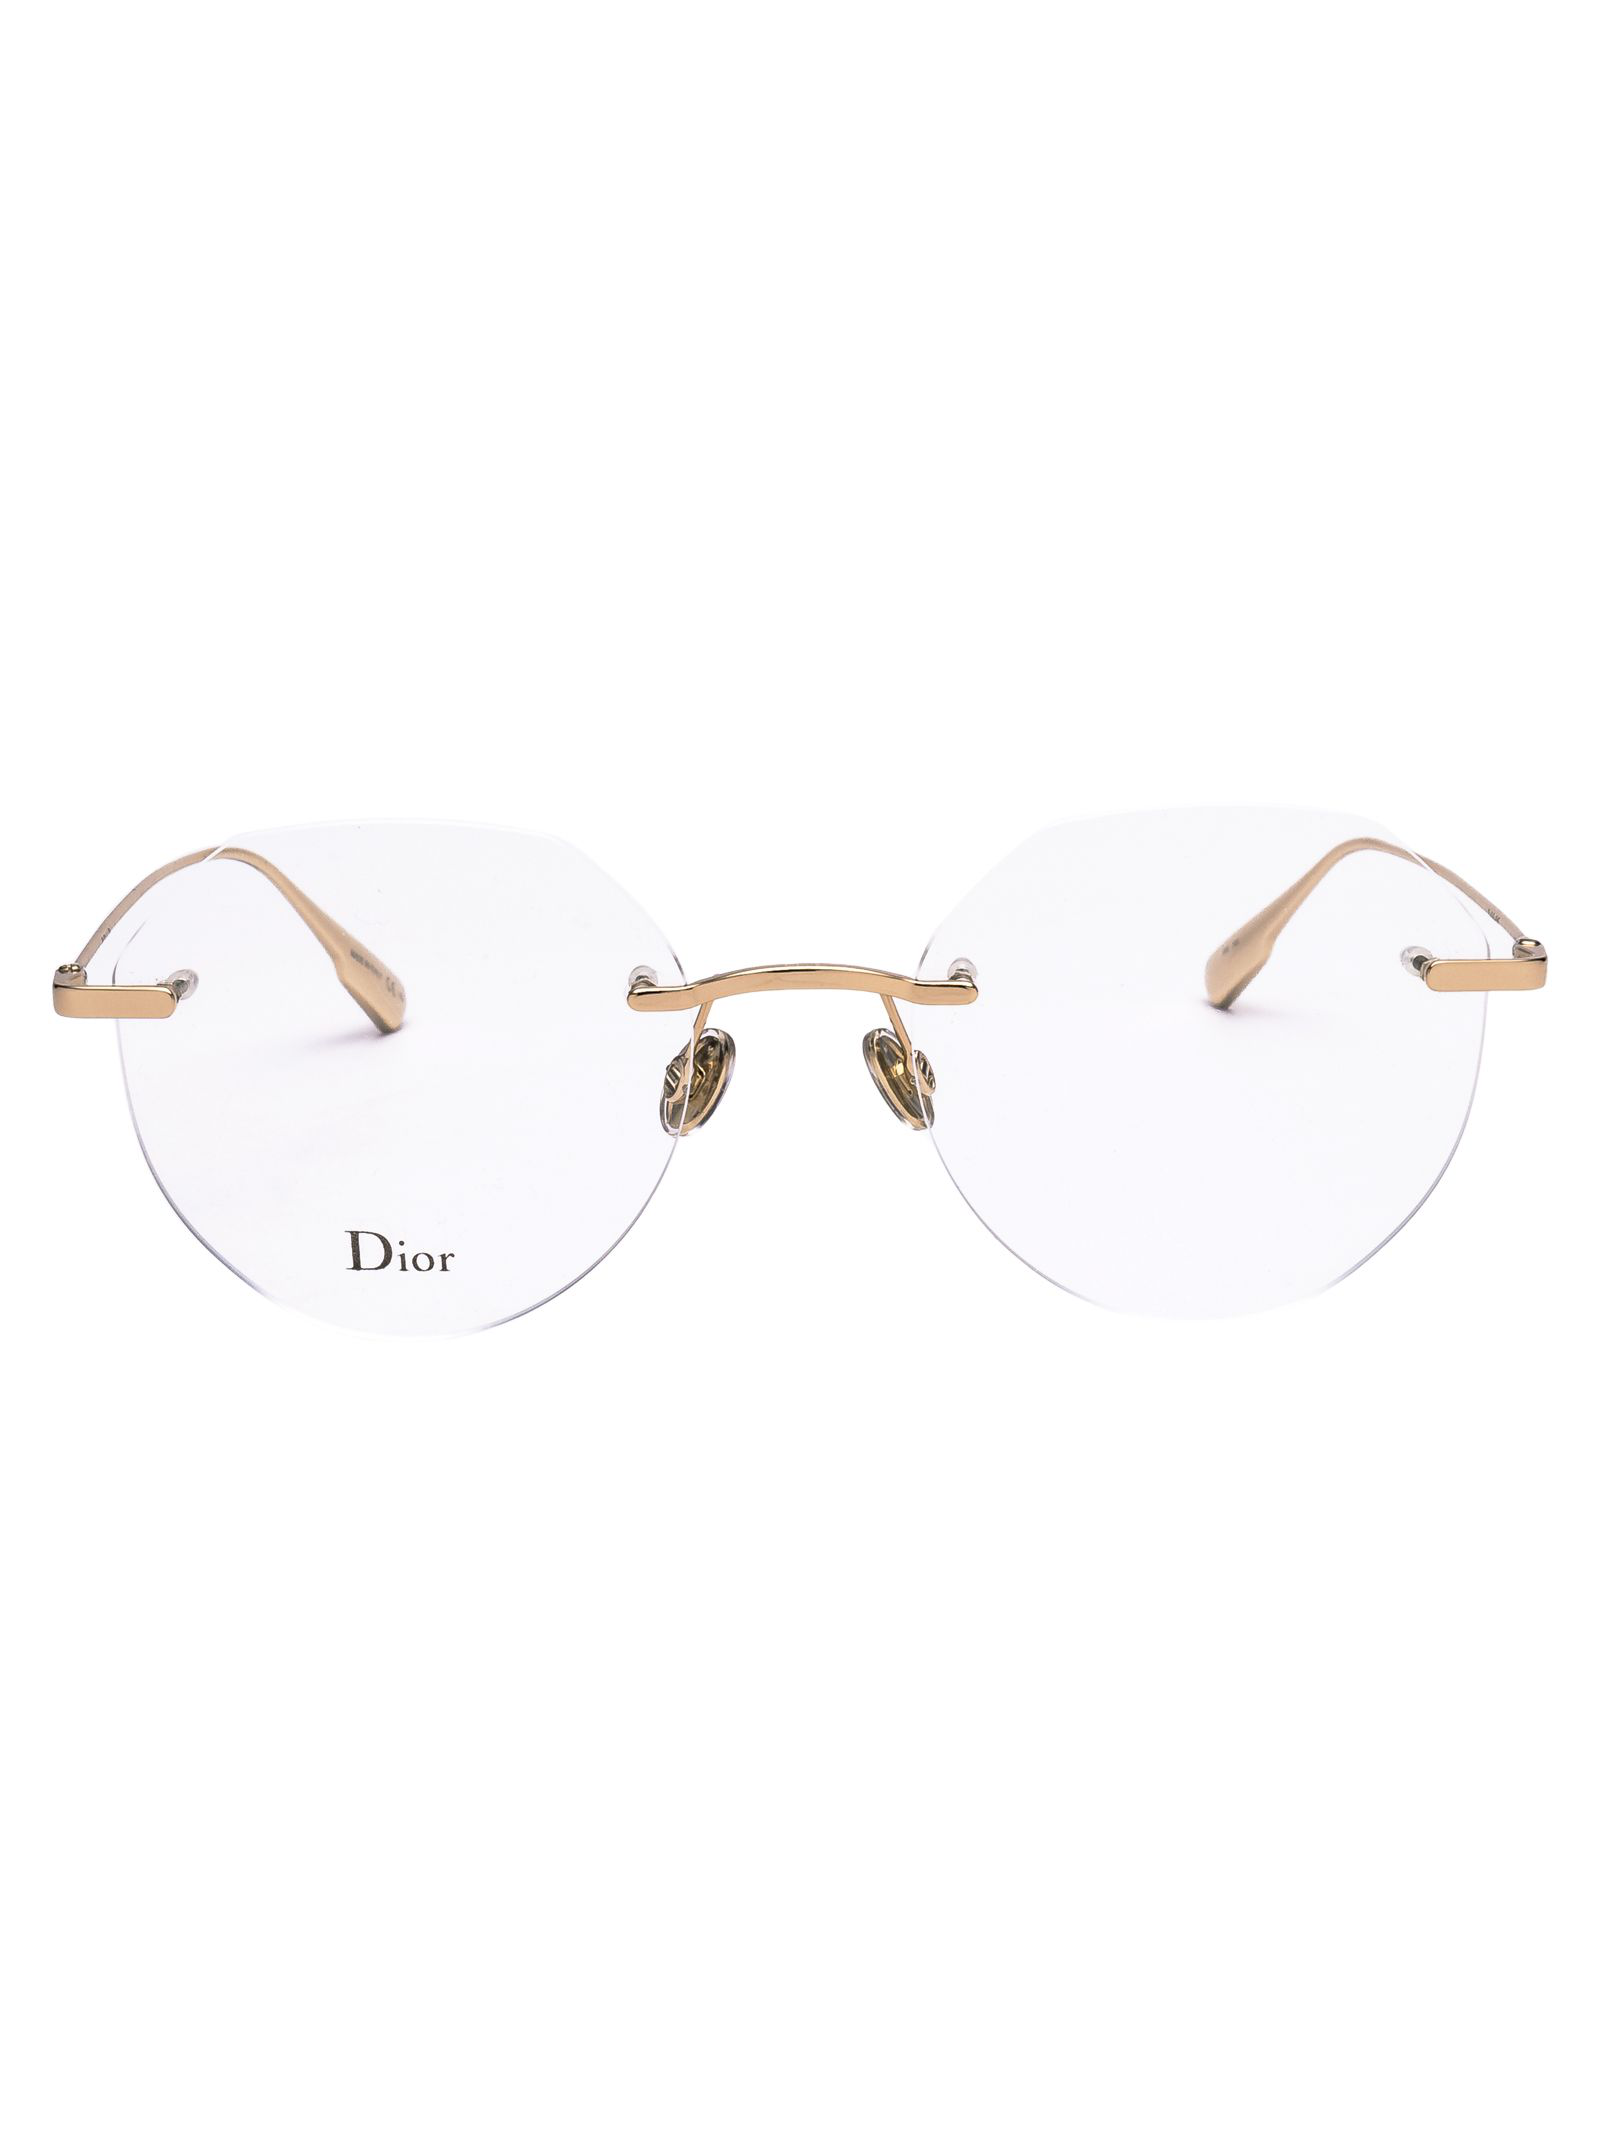 dior rose gold glasses